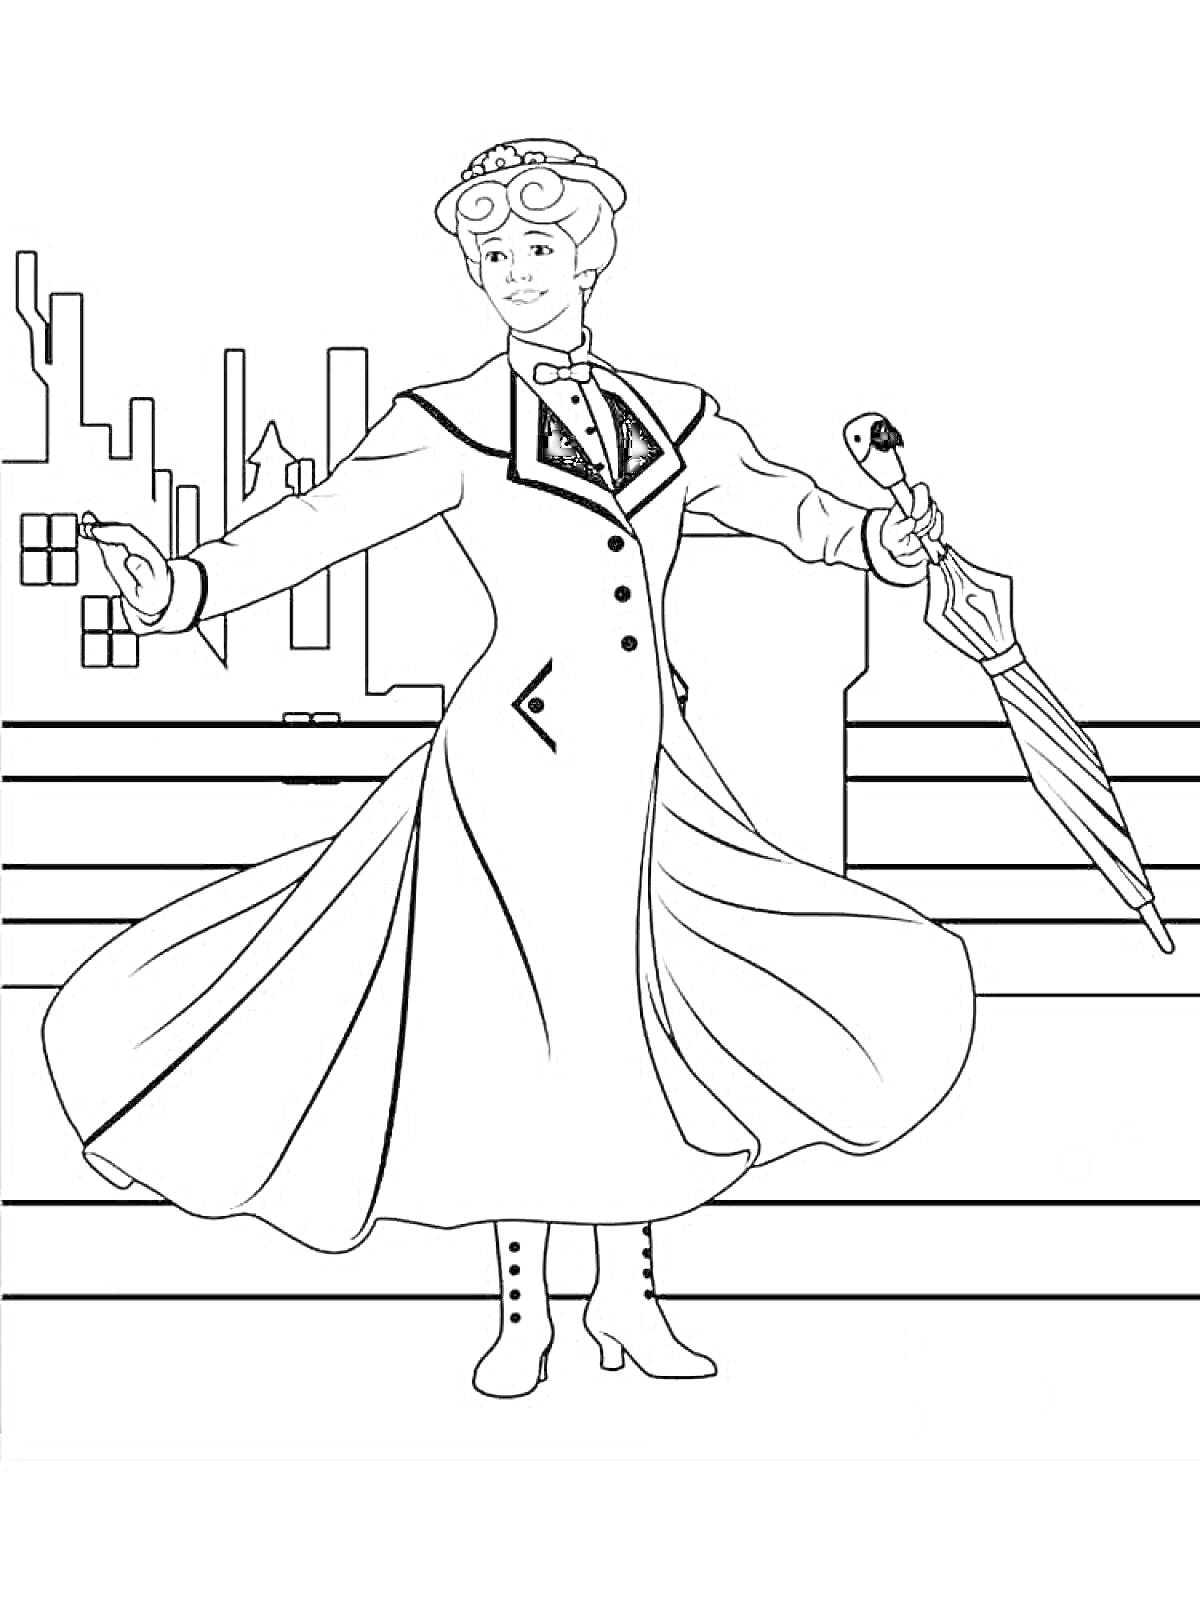 Раскраска Мэри Поппинс в длинном пальто, с зонтом в руке, на фоне городских зданий и лестницы